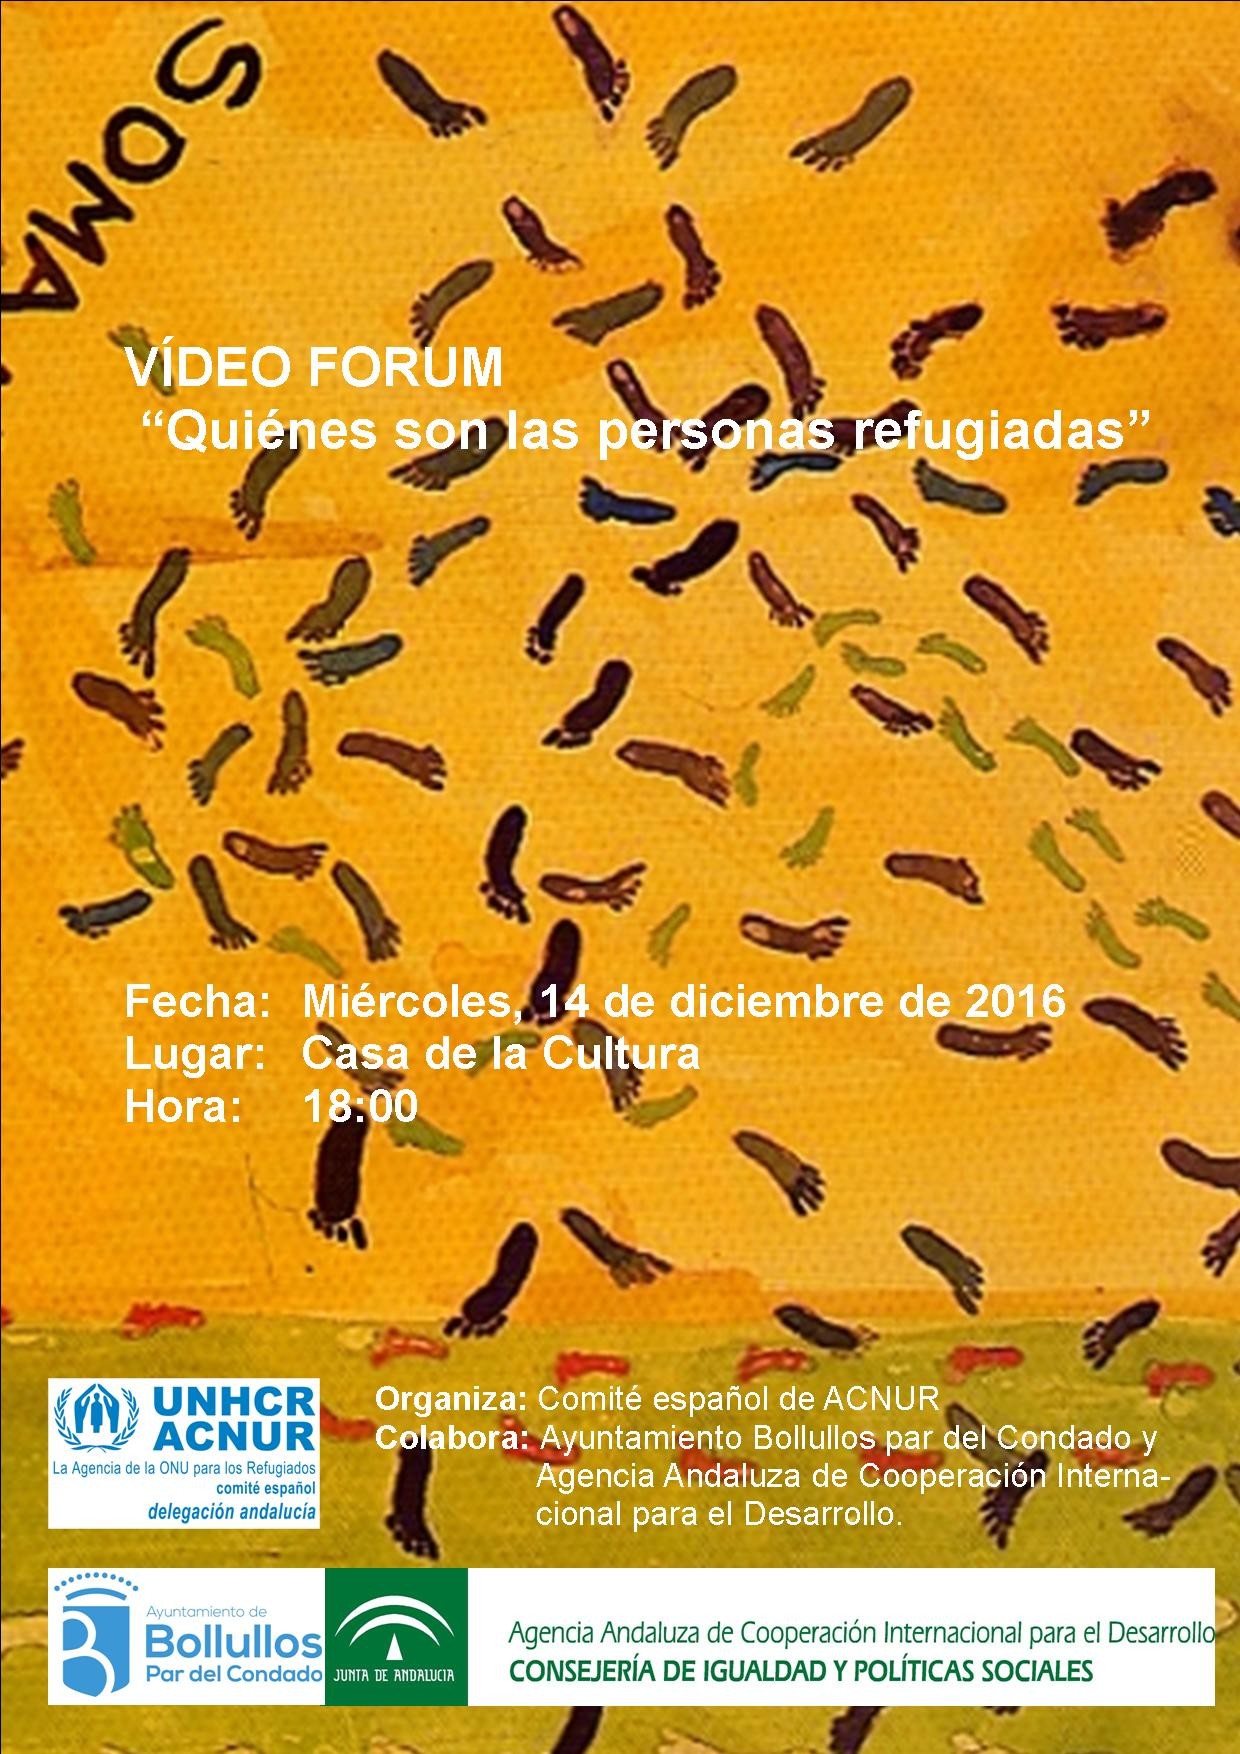 Video Forum "Quienes son las personas refugiadas"